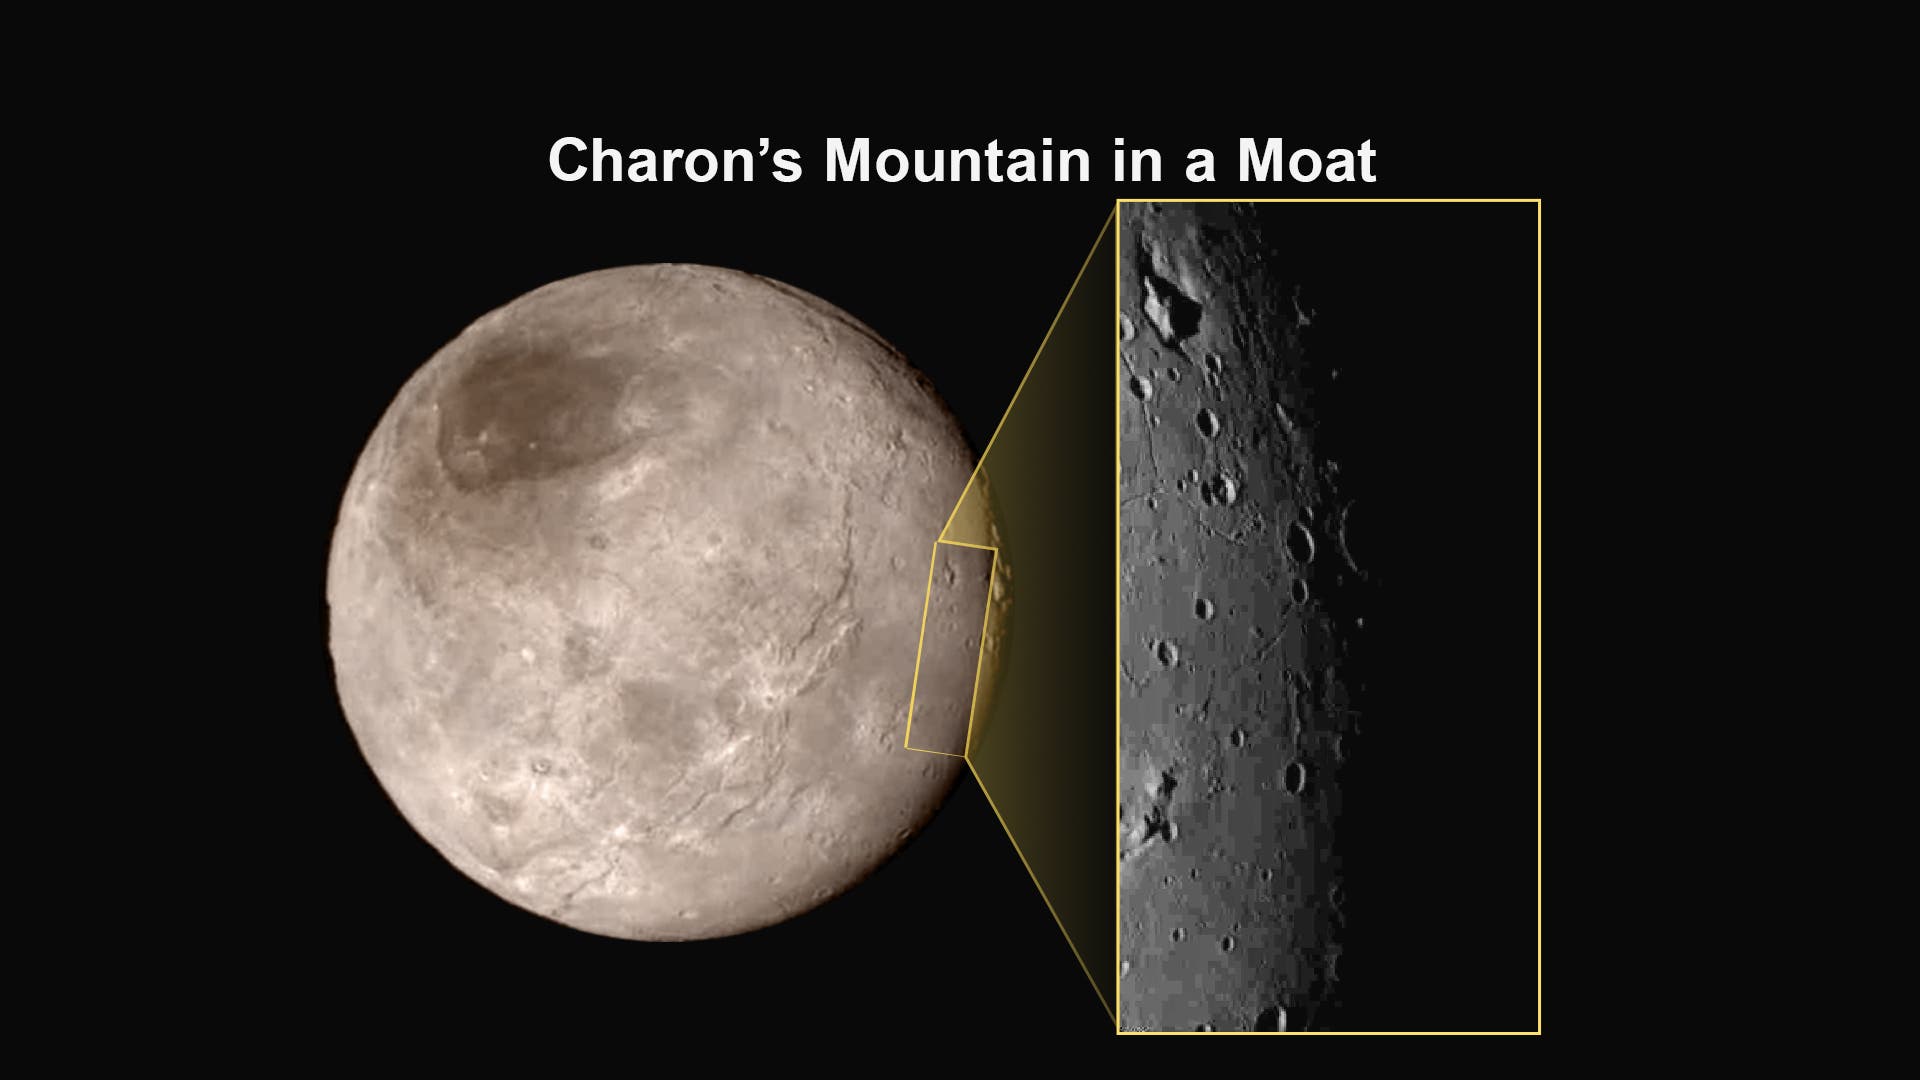 Detailbild der Charon-Oberfläche